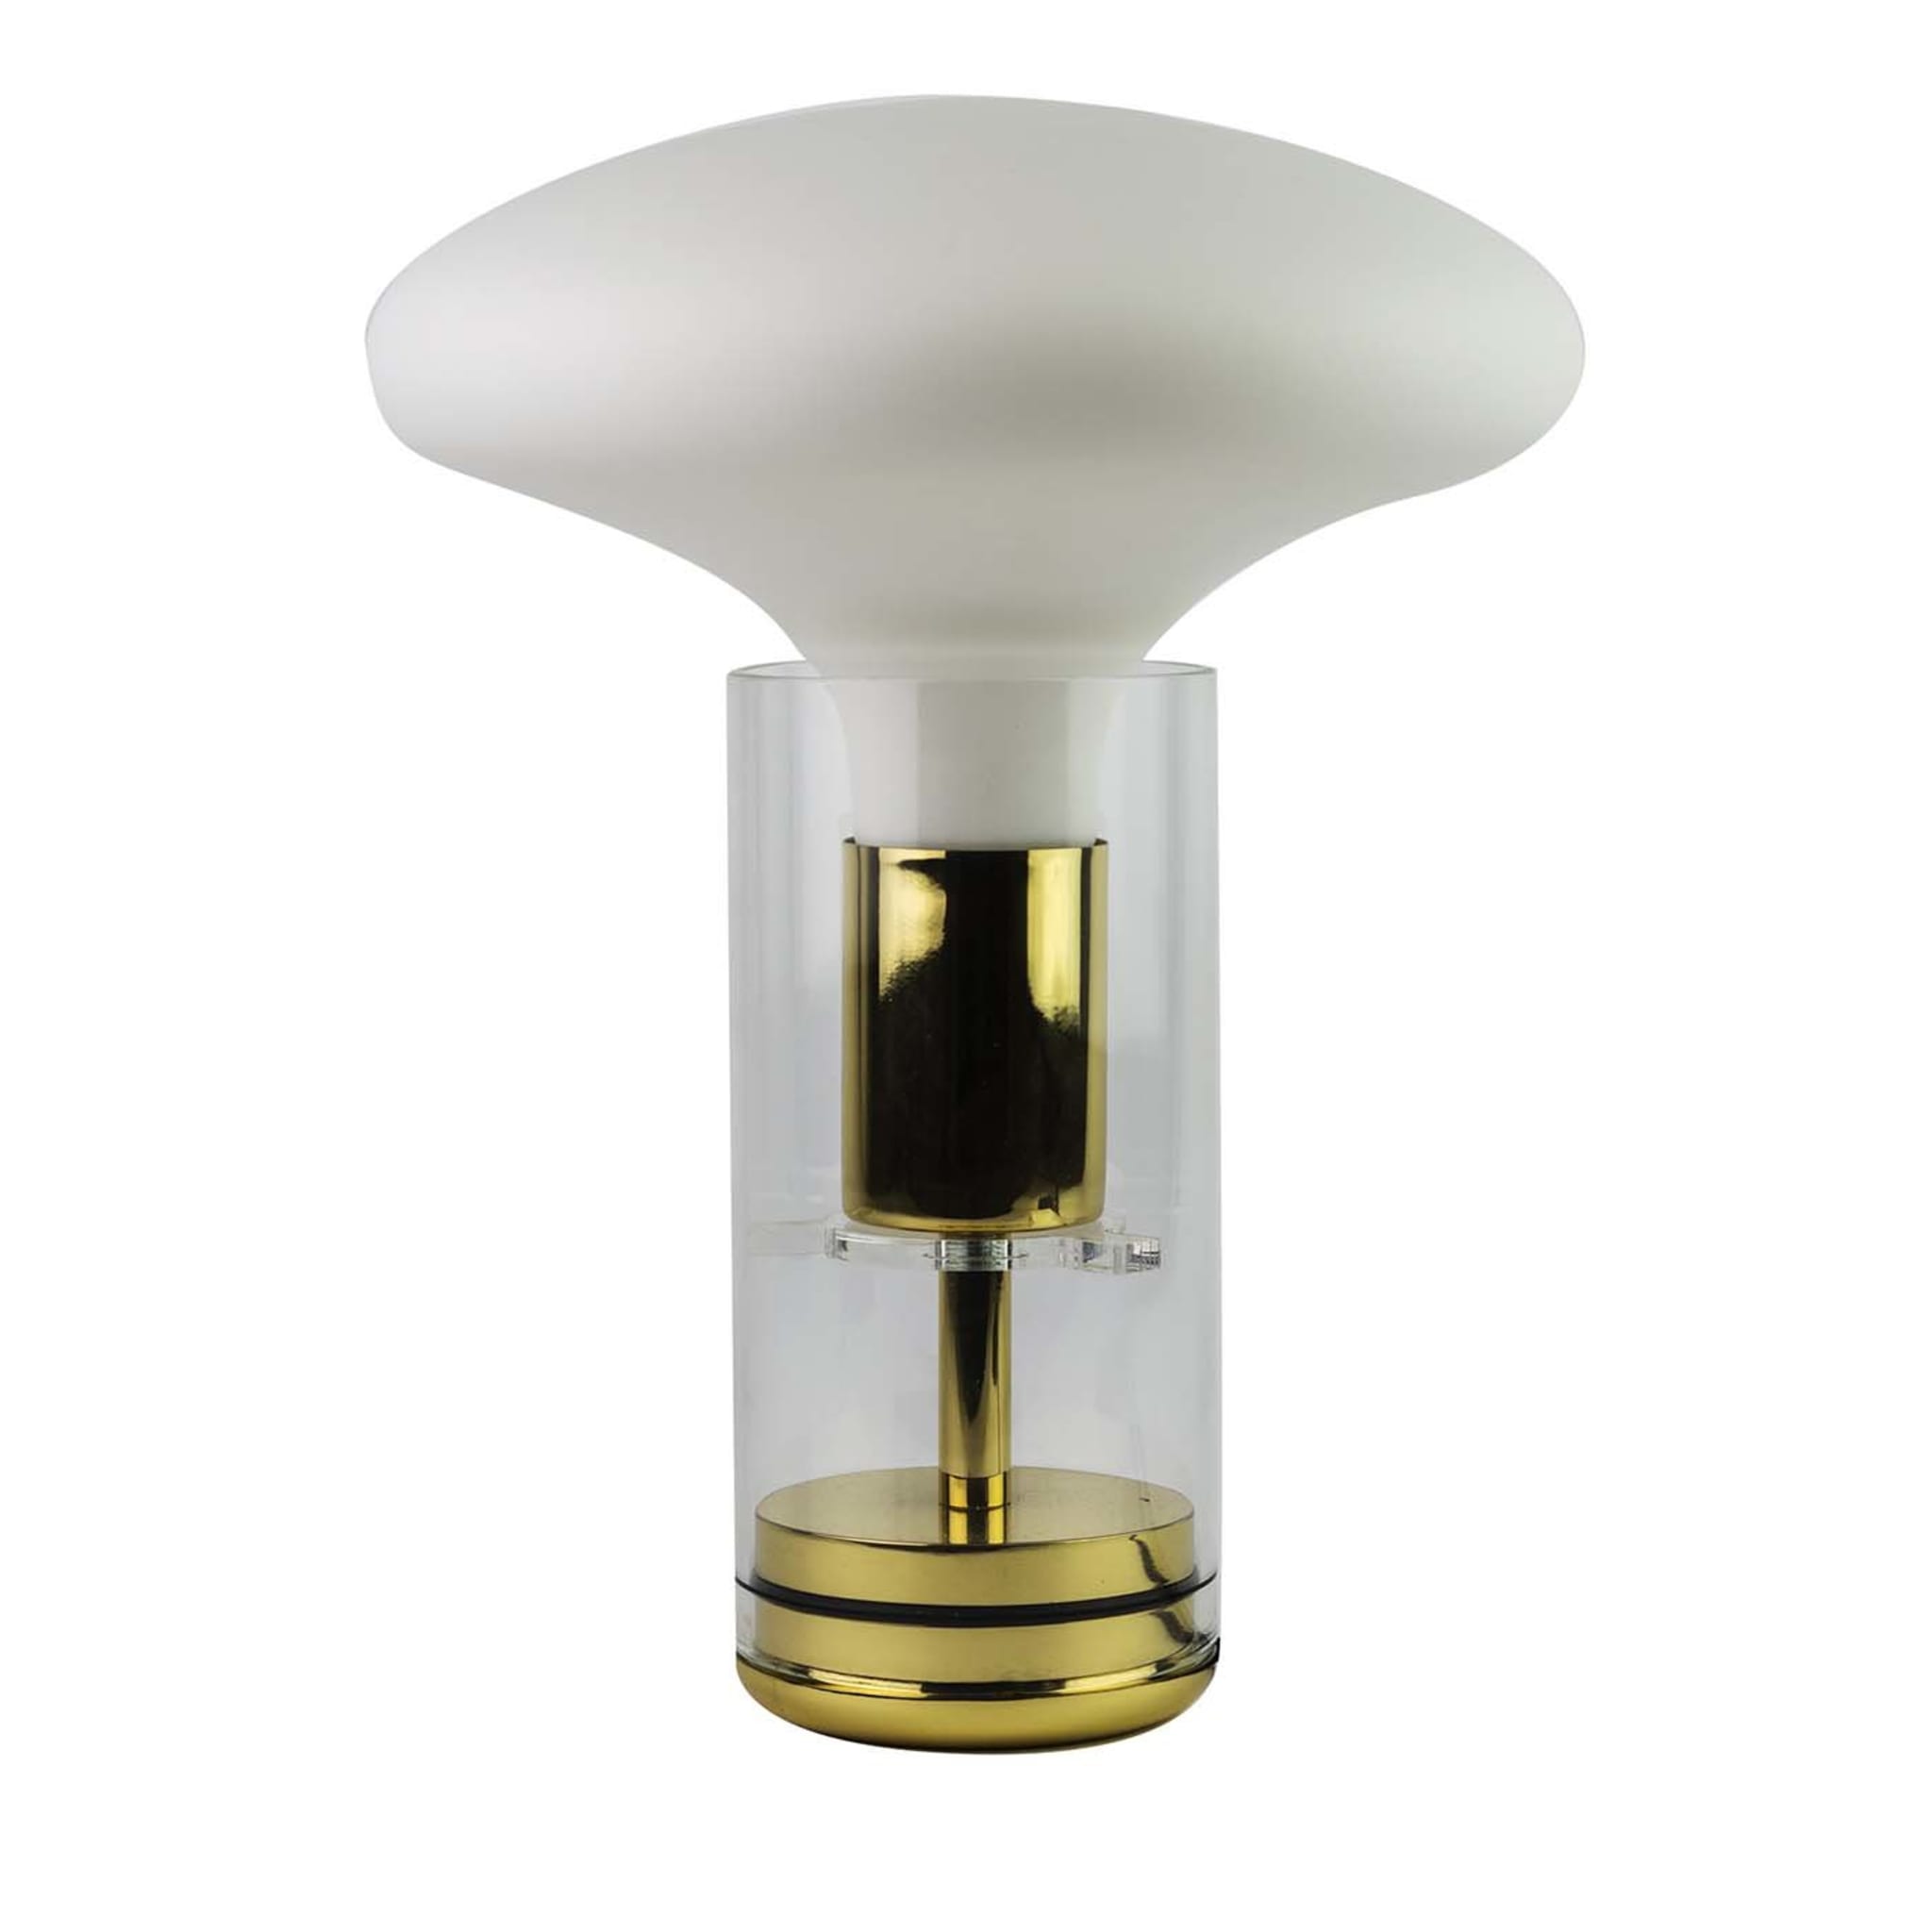 Stem 160 Glas-Tischlampe von Alalda Design - Hauptansicht